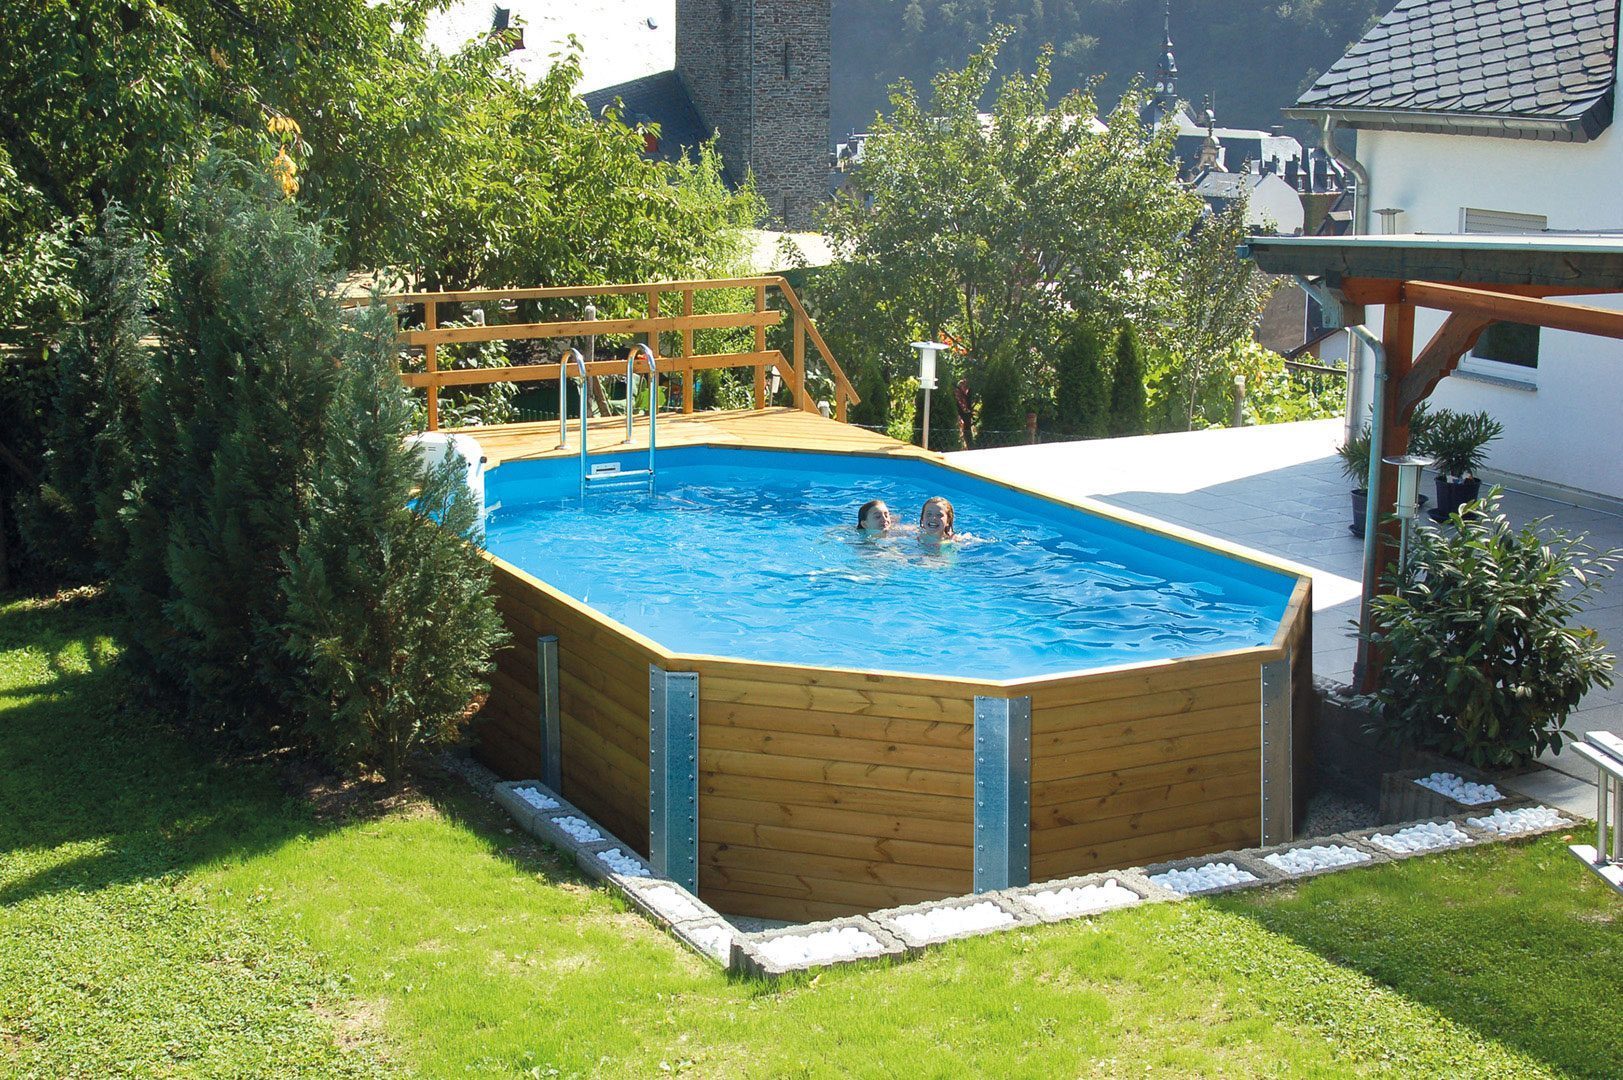 Grosser Weka Swimmingpool im Garten vor einem weissen Haus. Der Pool ist gefüllt mit zwei Kindern. 